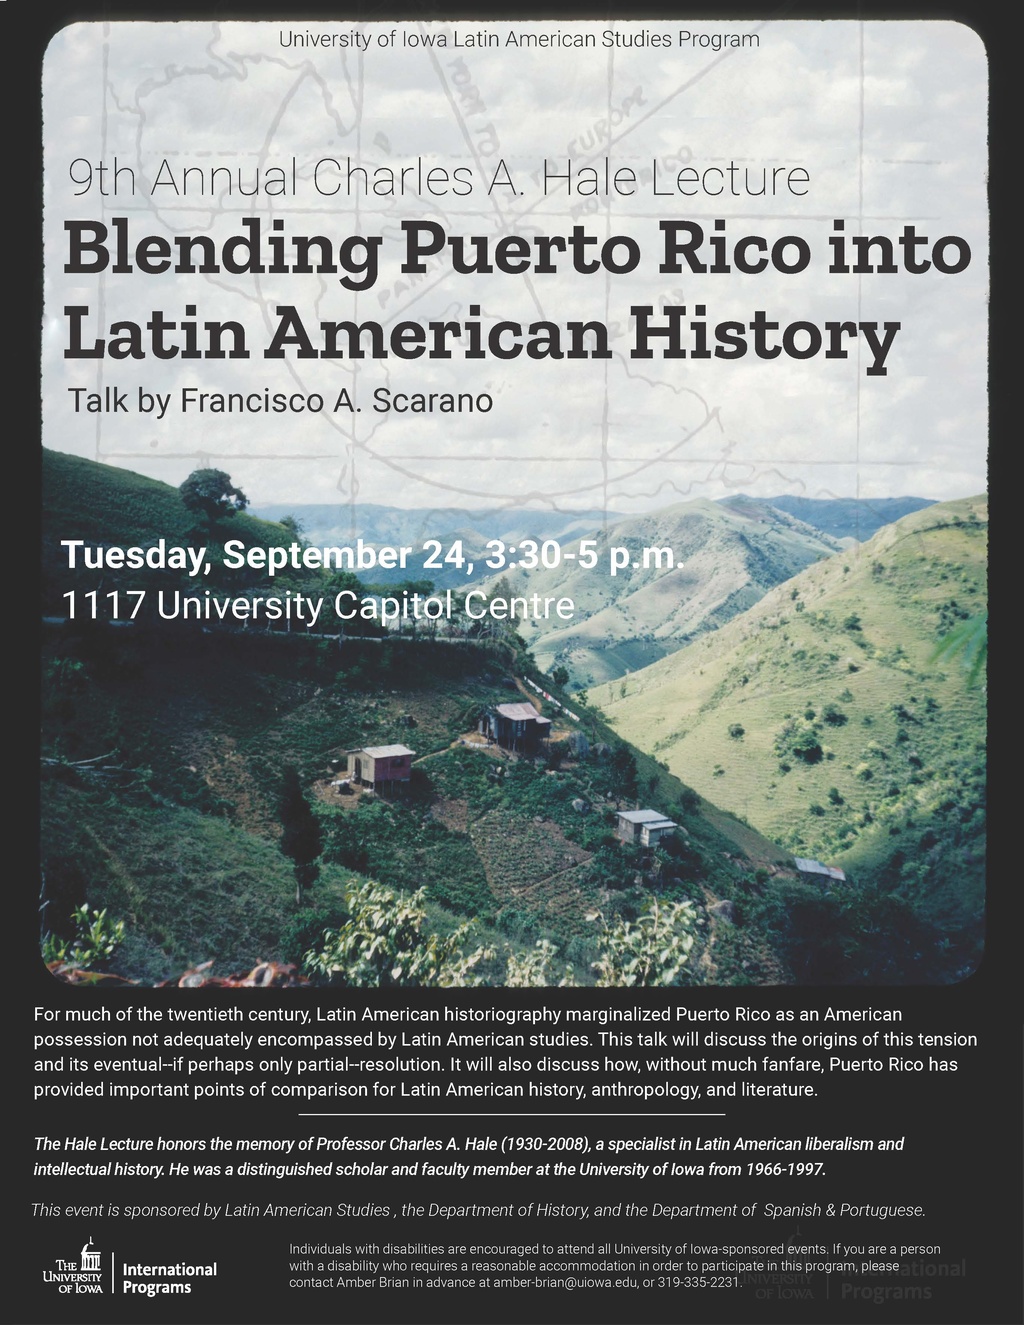 Blending Puerto Rico into Latin American History - Francisco A. Scarano